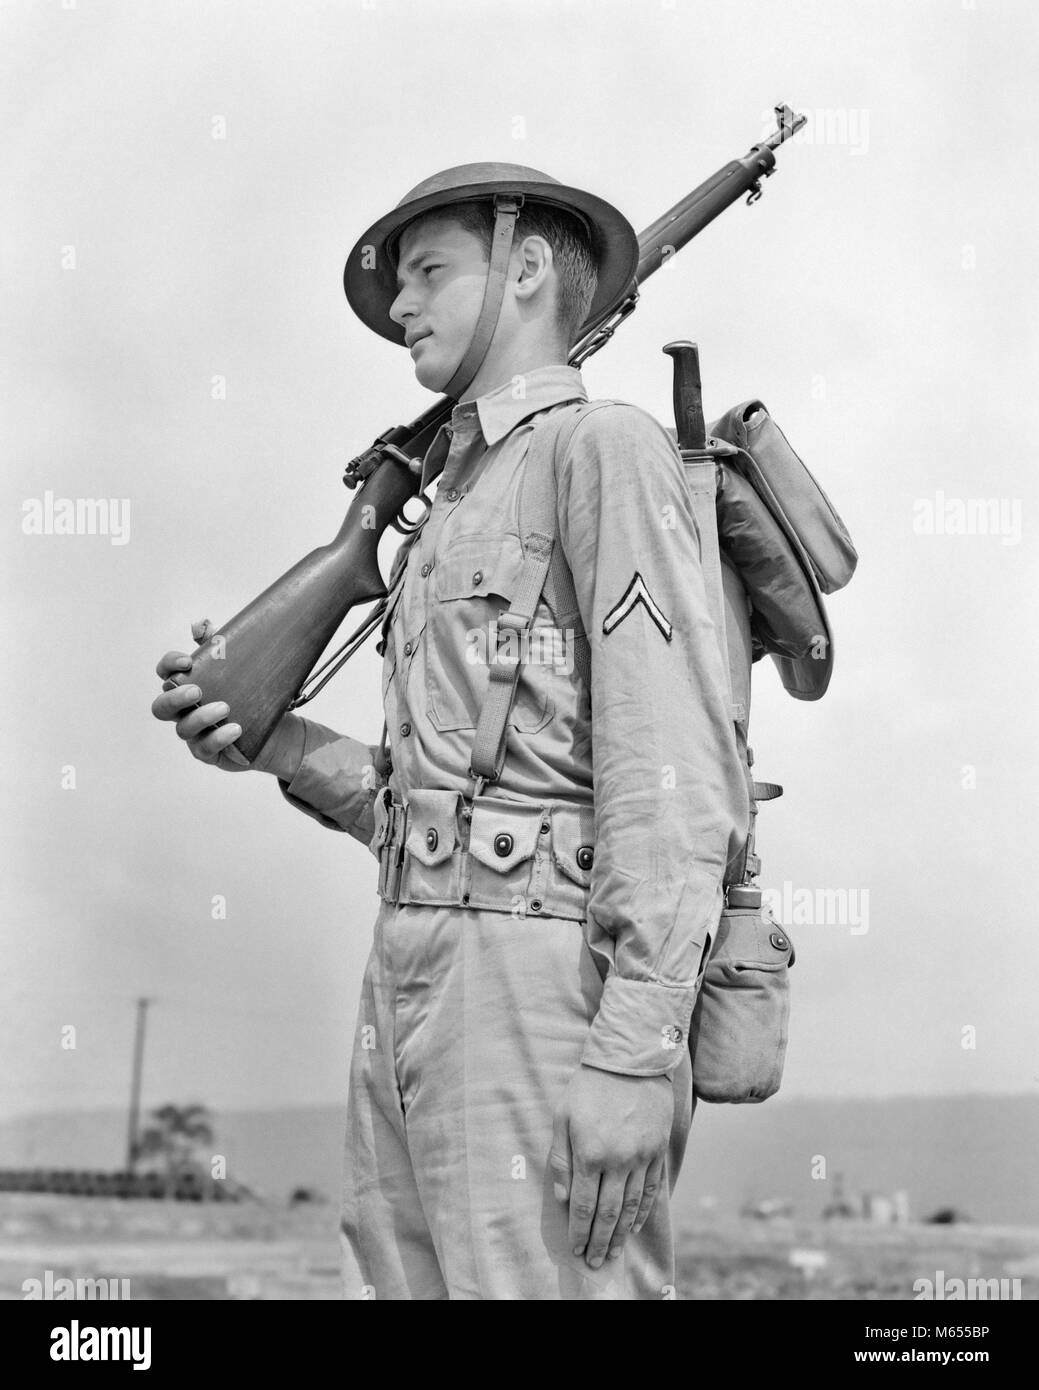 1940 amerikanischen Soldaten Gewehr auf der Schulter tragen HELM KHAKI UNIFORM MIT PRIVATE FIRST CLASS Streifen am Ärmel - eine 2360 HAR 001 HARS NOSTALGIE KANTINE HÜLSE 20-25 JAHRE HISTORISCHE PRIVATE ABENTEUER SCHUTZ AUFMERKSAMKEIT AUFREGUNG NIEMAND WELTKRIEGE JAHRE WELTKRIEG WELTKRIEG 18-19 ZWEI ZWEITEN WELTKRIEG UNIFORMEN GEWEHRE WELTKRIEG 2-GANG FEUERWAFFE FEUERWAFFEN KHAKI MÄNNER junger Erwachsener MAN B&W BAJONETT SCHWARZ UND WEISS SCHRAUBE AKTION KAUKASISCHEN ETHNIE PFLICHT FIRST CLASS GUARDING ALTMODISCHE PERSONEN, PRIVATE FIRST CLASS der rechten Schulter ARME SPRINGFIELD GEWEHR GURTBAND Stockfoto